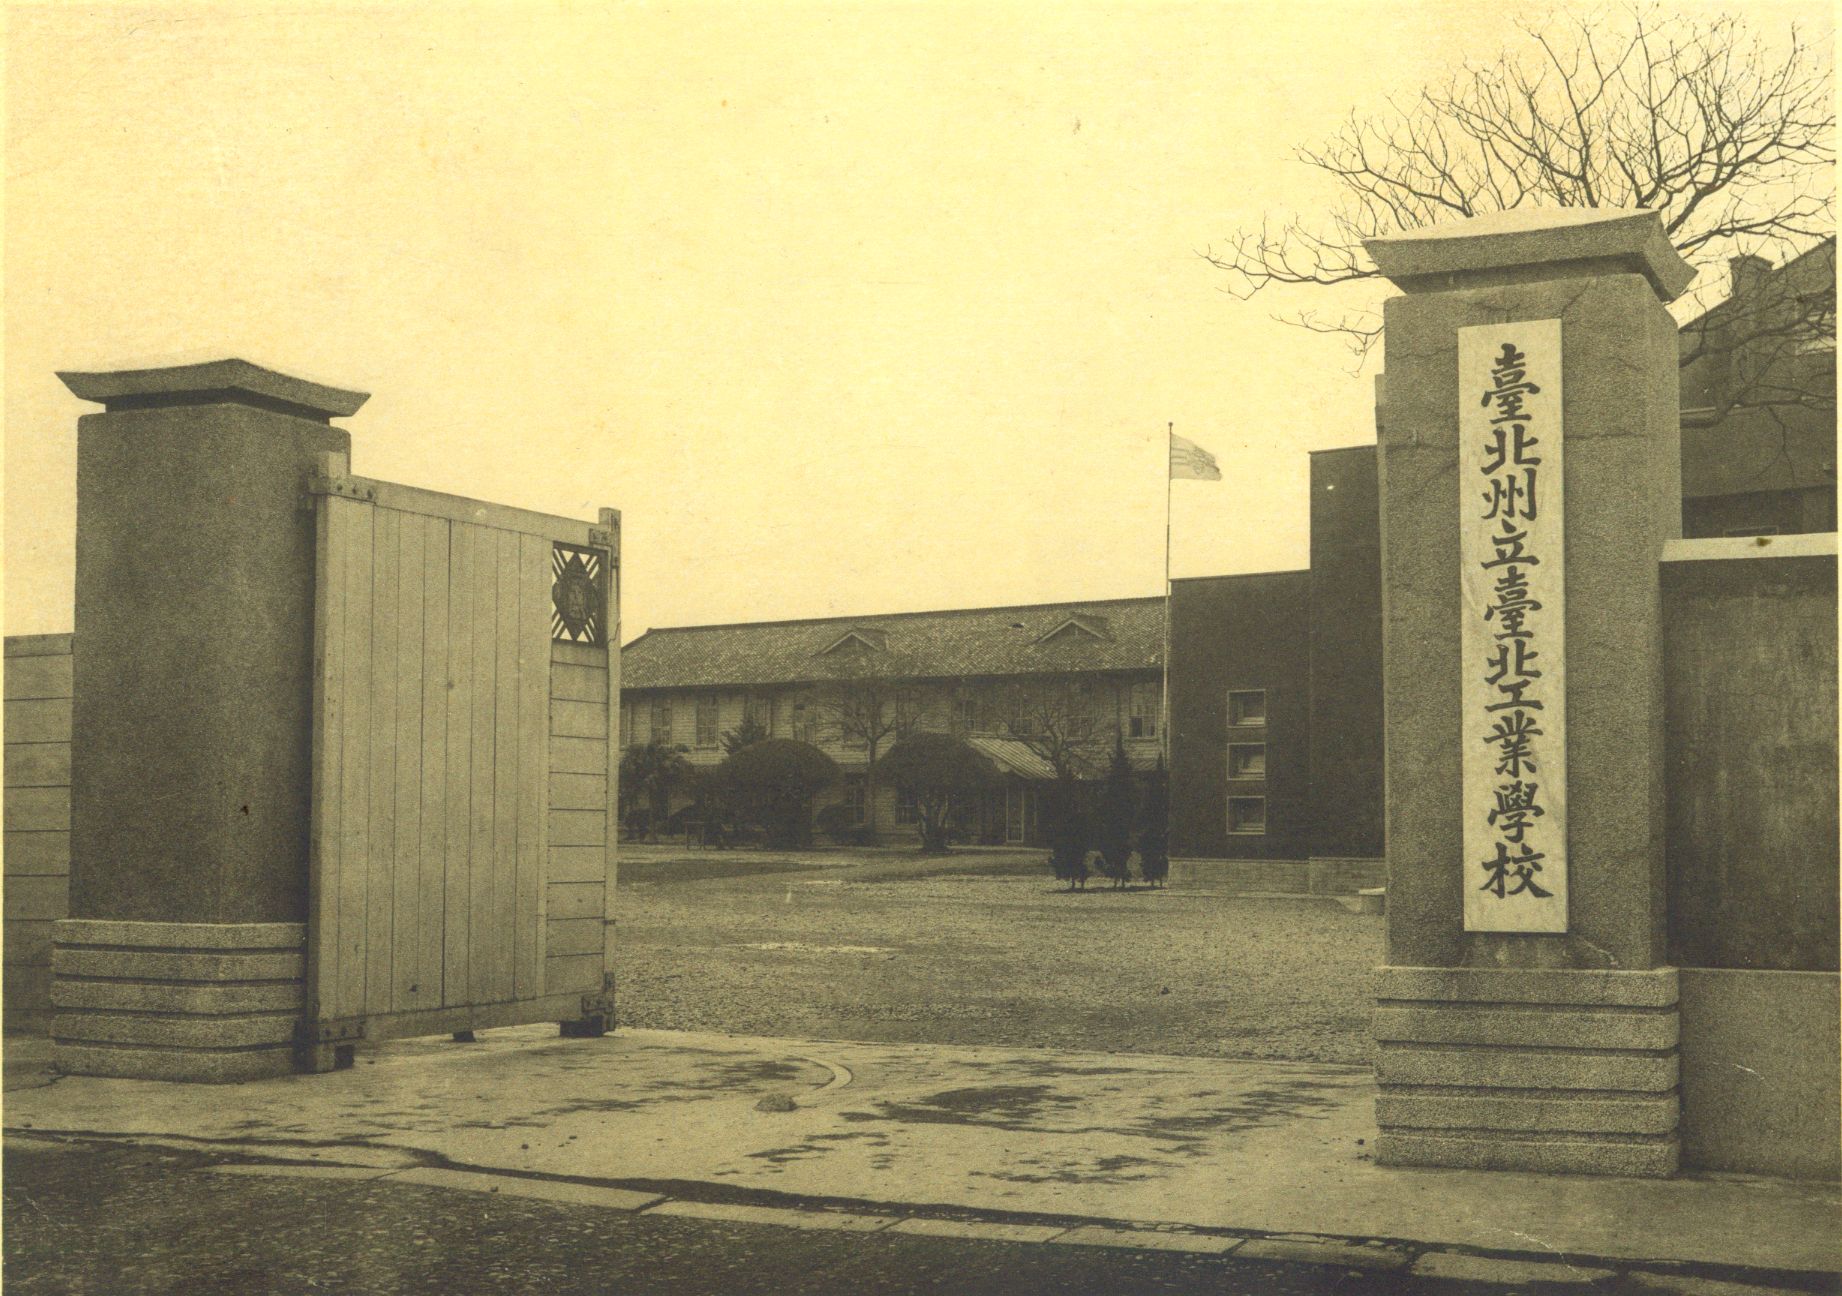 臺北州立臺北工業學校之八德路校門(1939年)